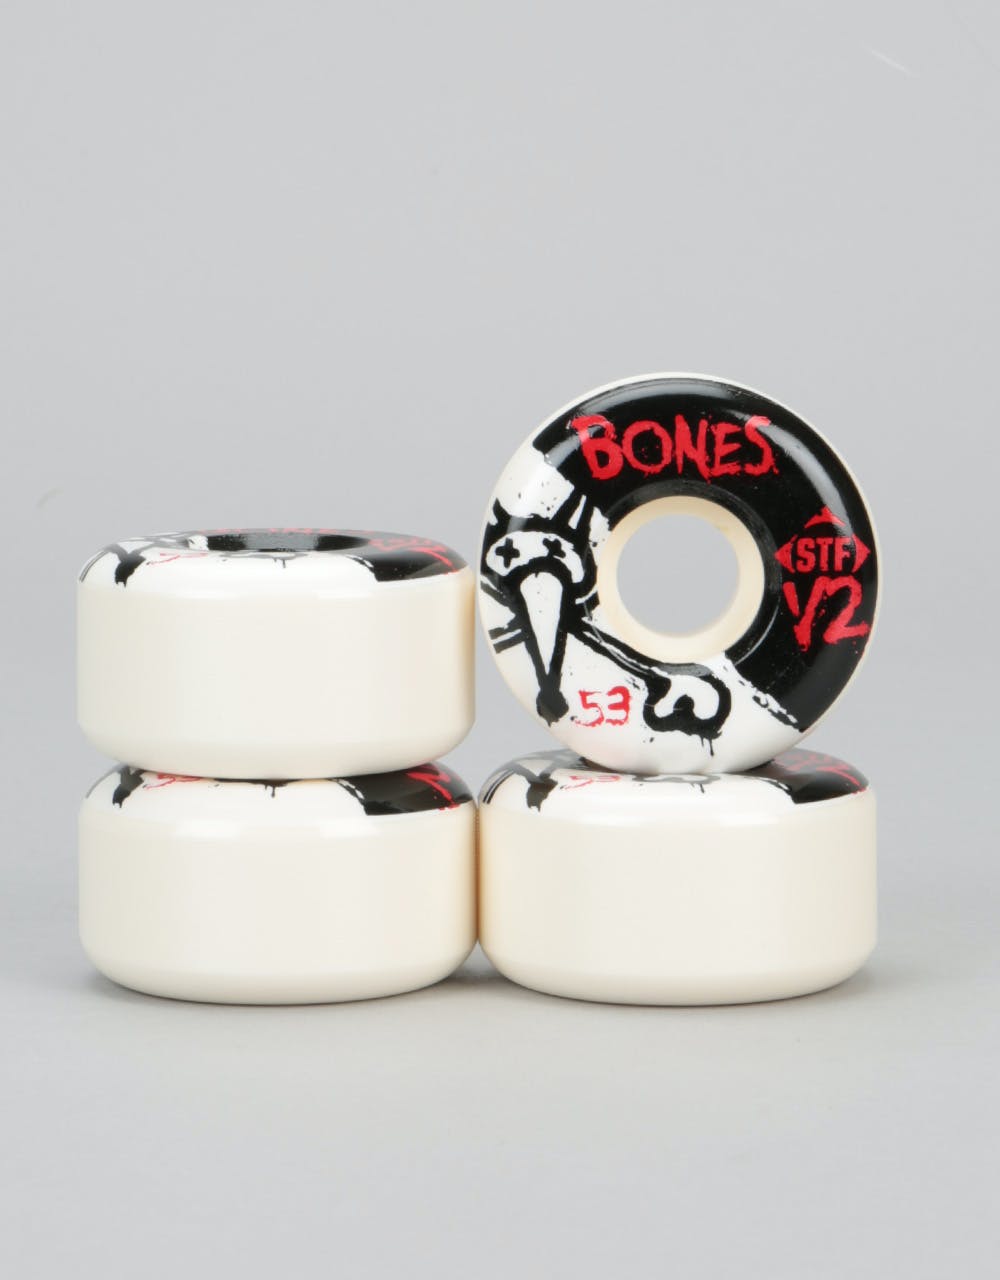 Bones V2 Series STF Team Wheel - 53mm